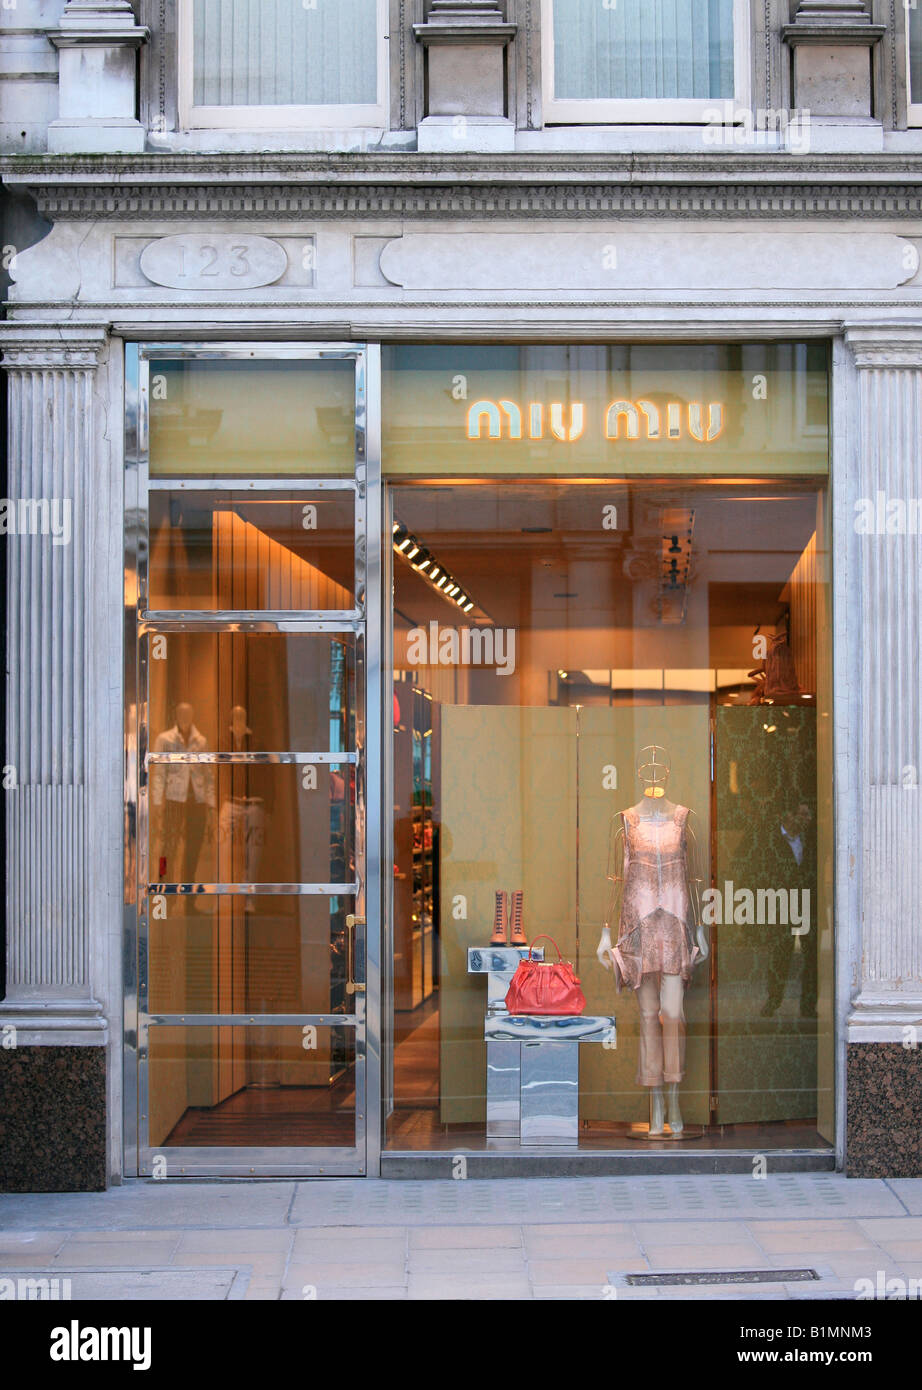 Miu Miu store, London Stock Photo